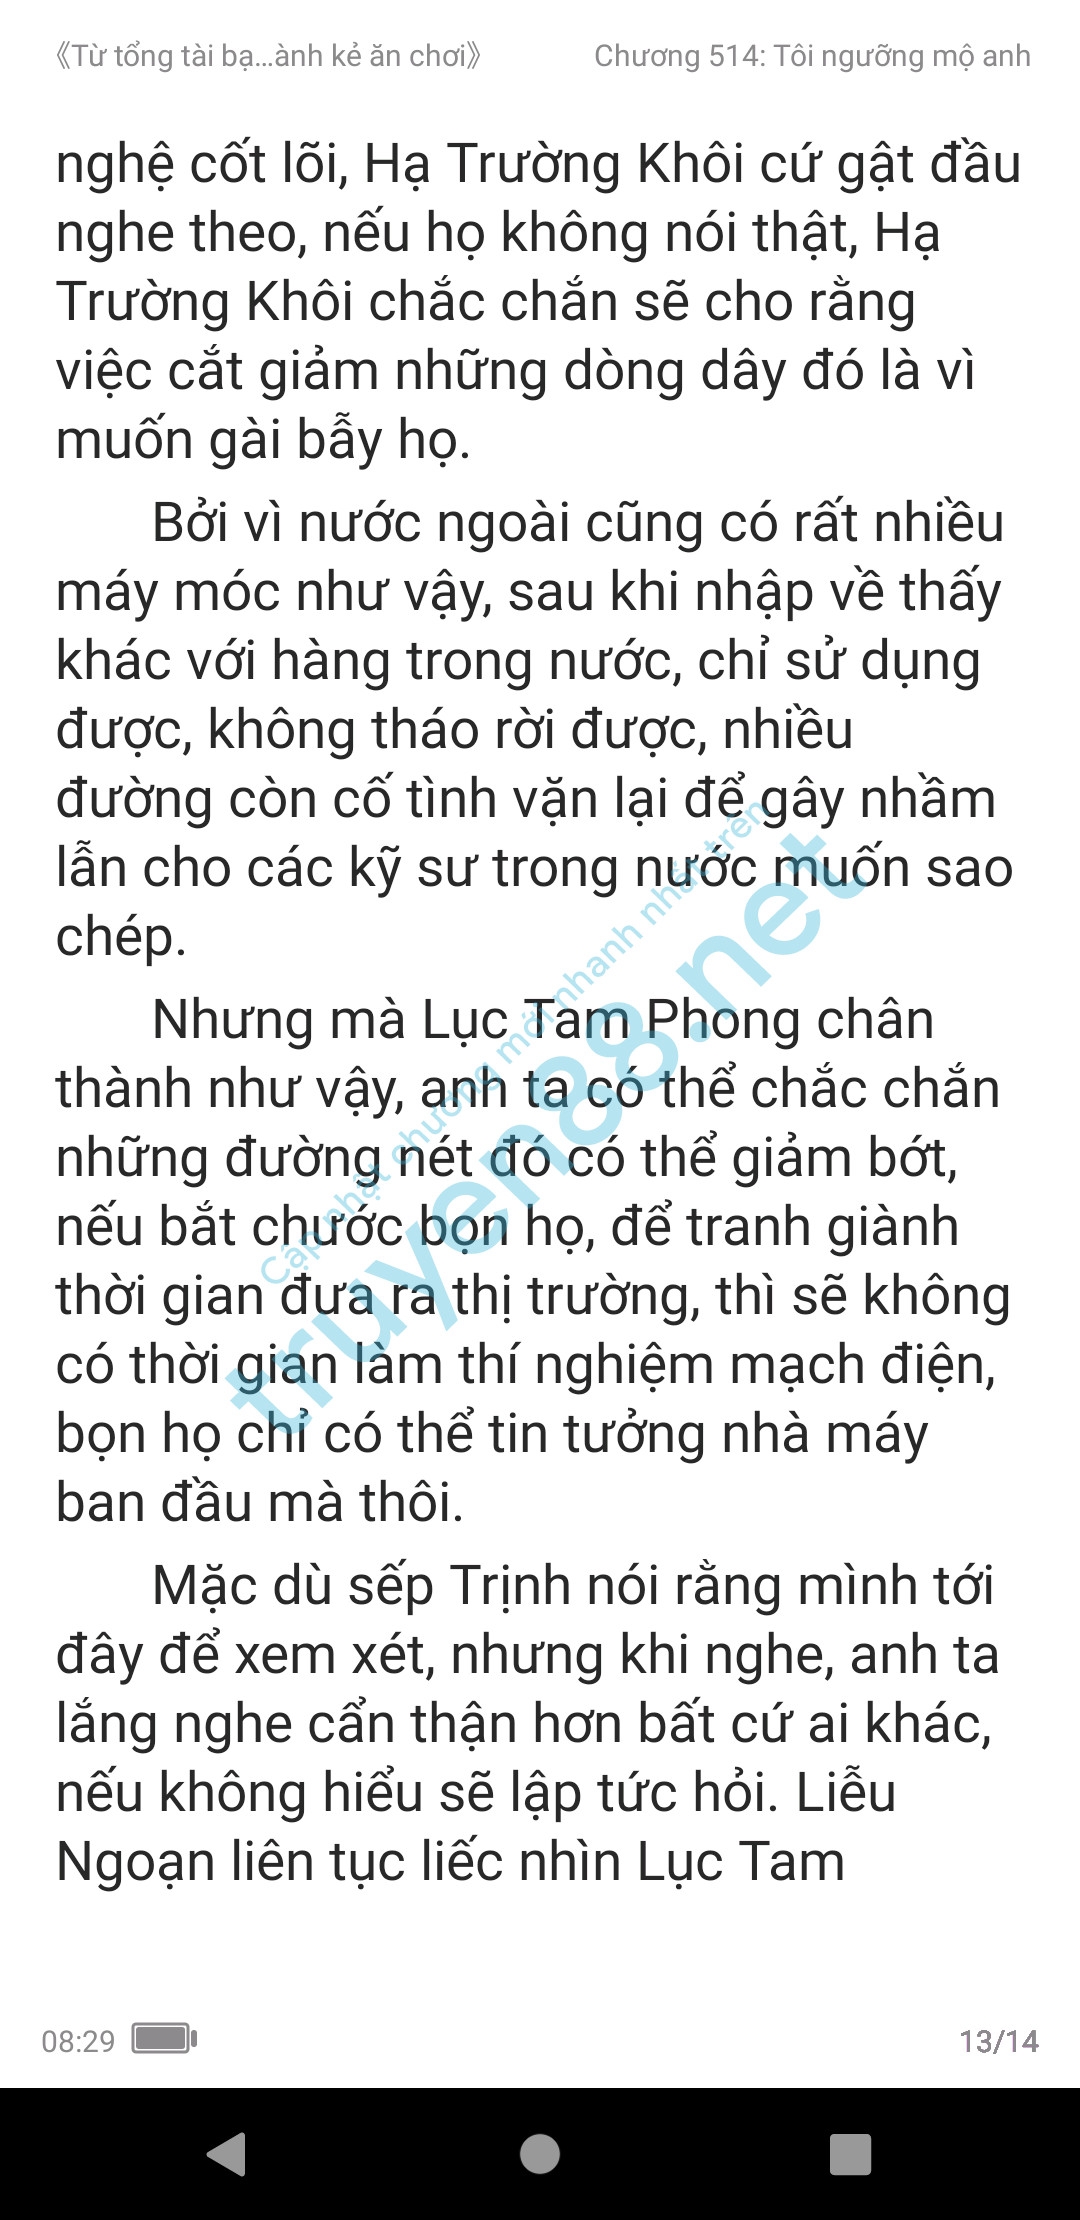 ke-an-choi-bien-tong-tai-514-1